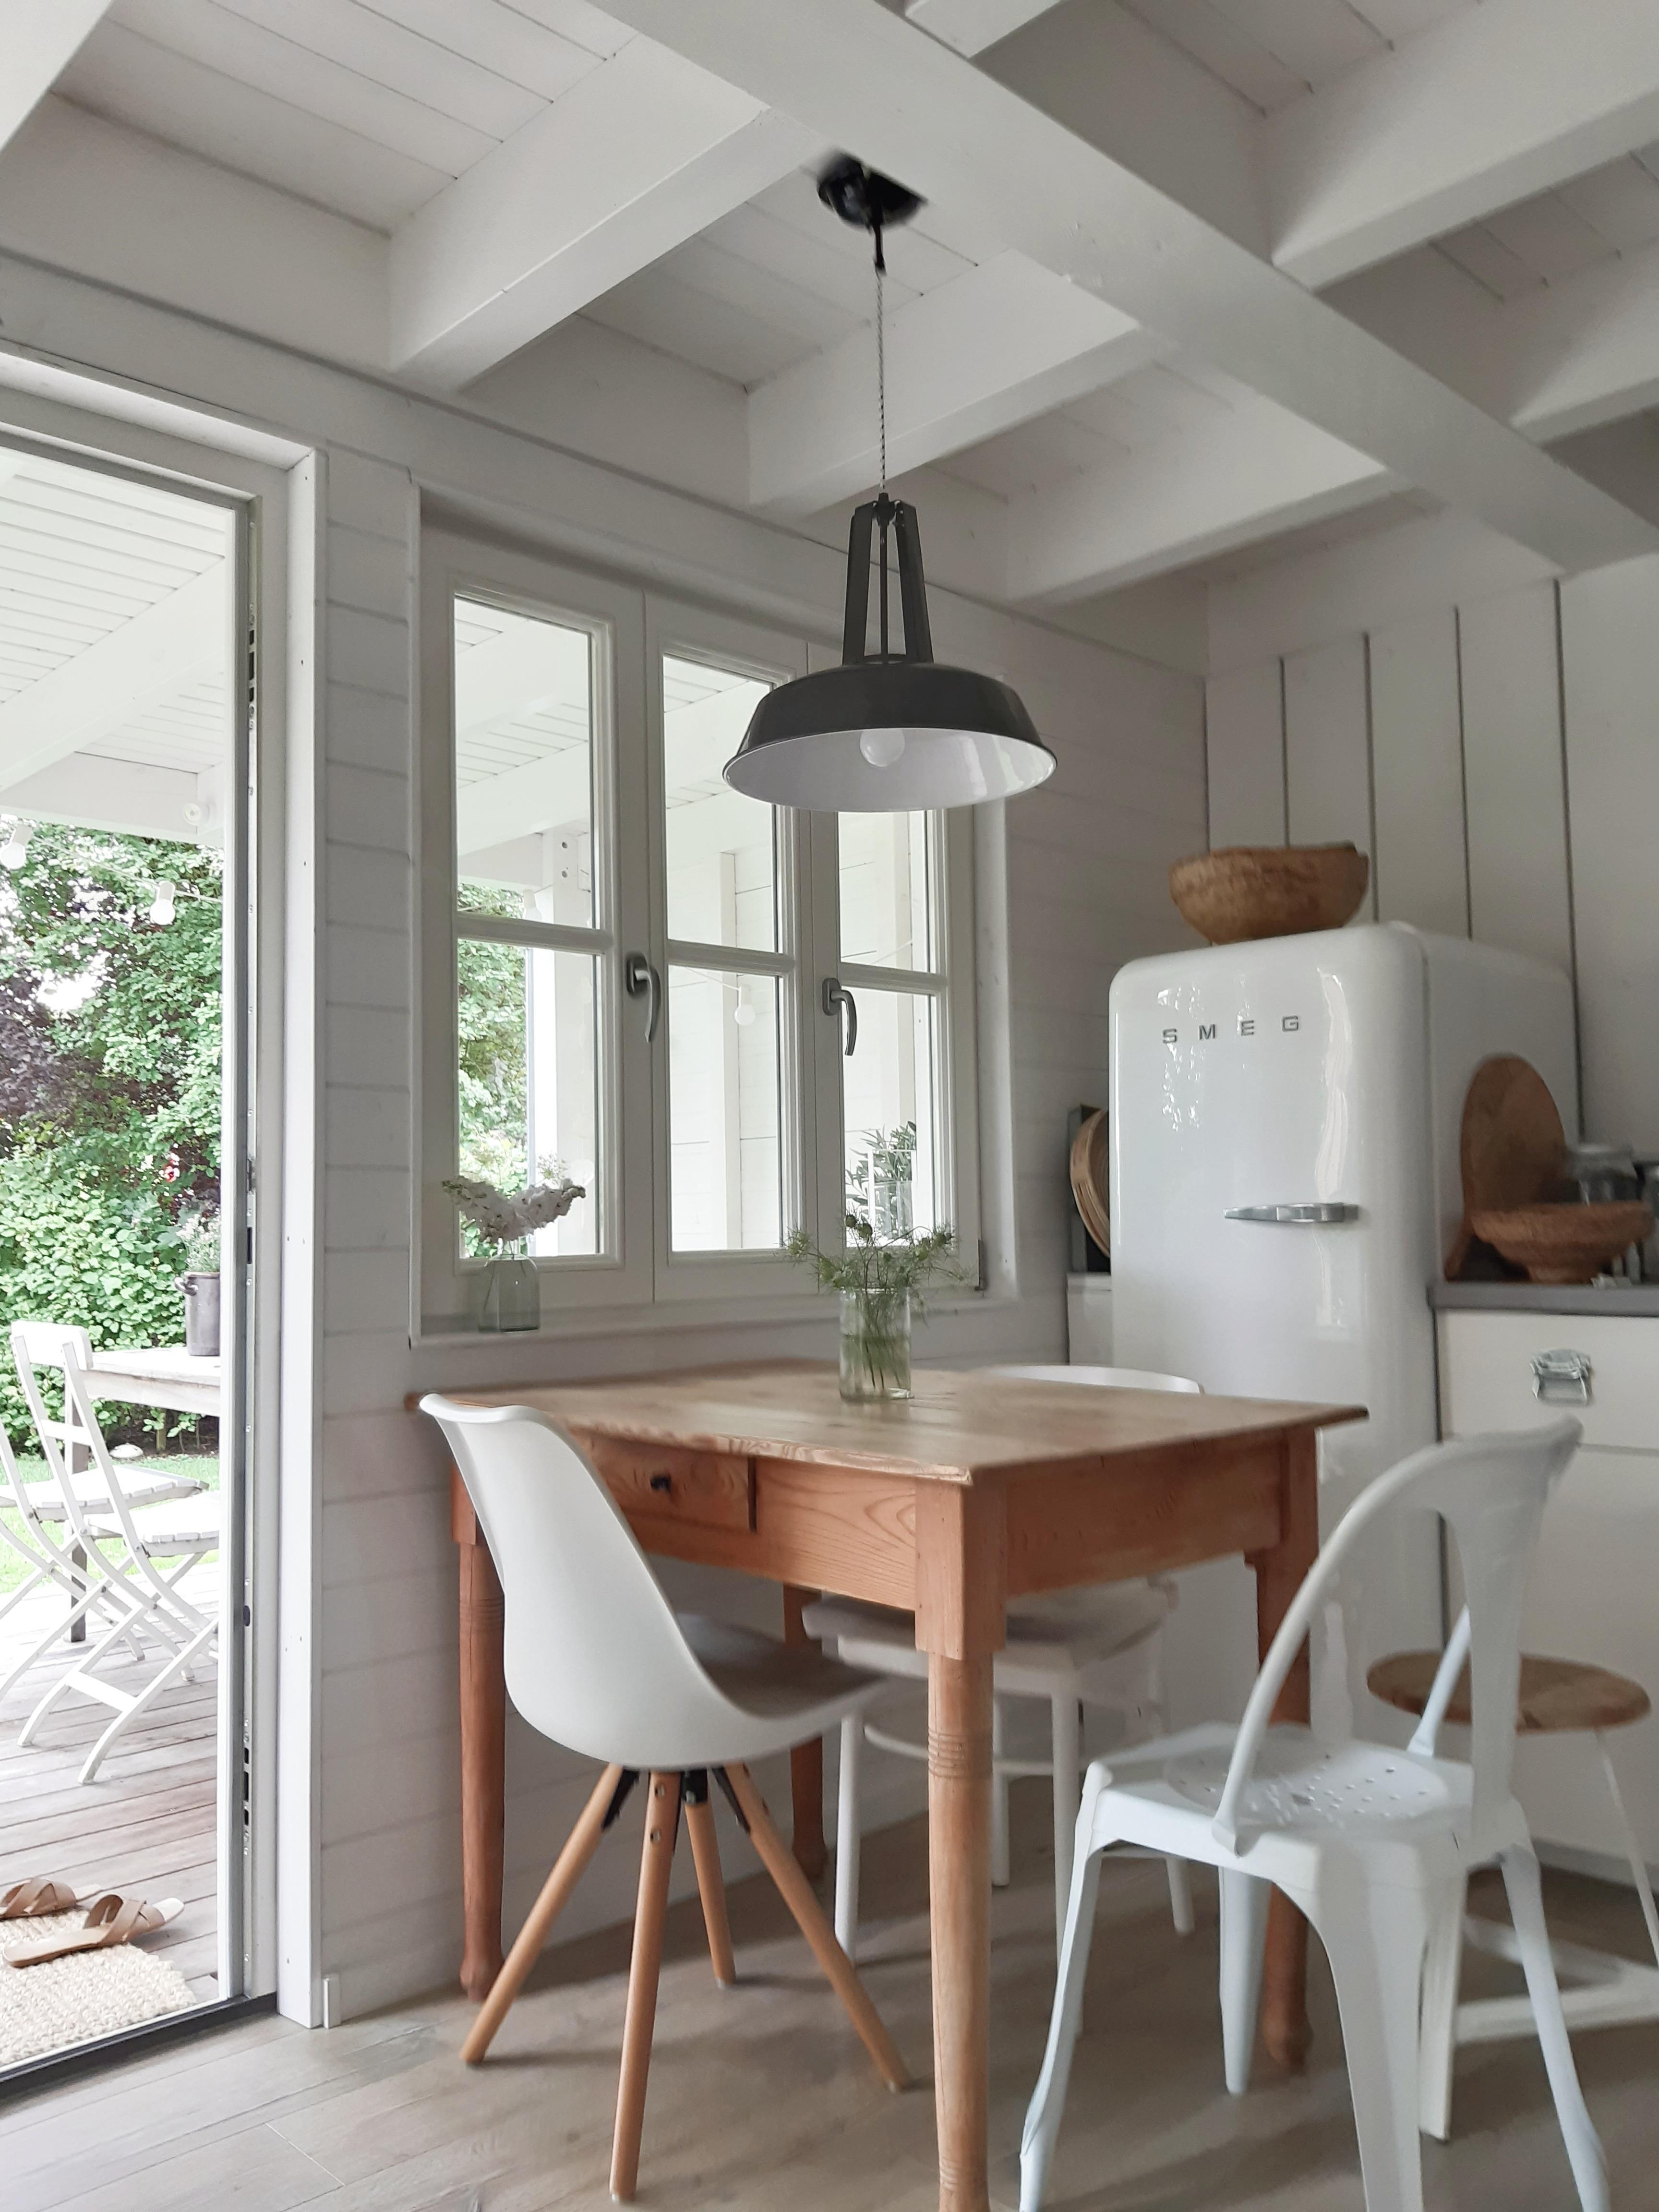 #kitchen #whitekitchen #küchendetails #couchstyle #sommer #sommerhäuschen 
